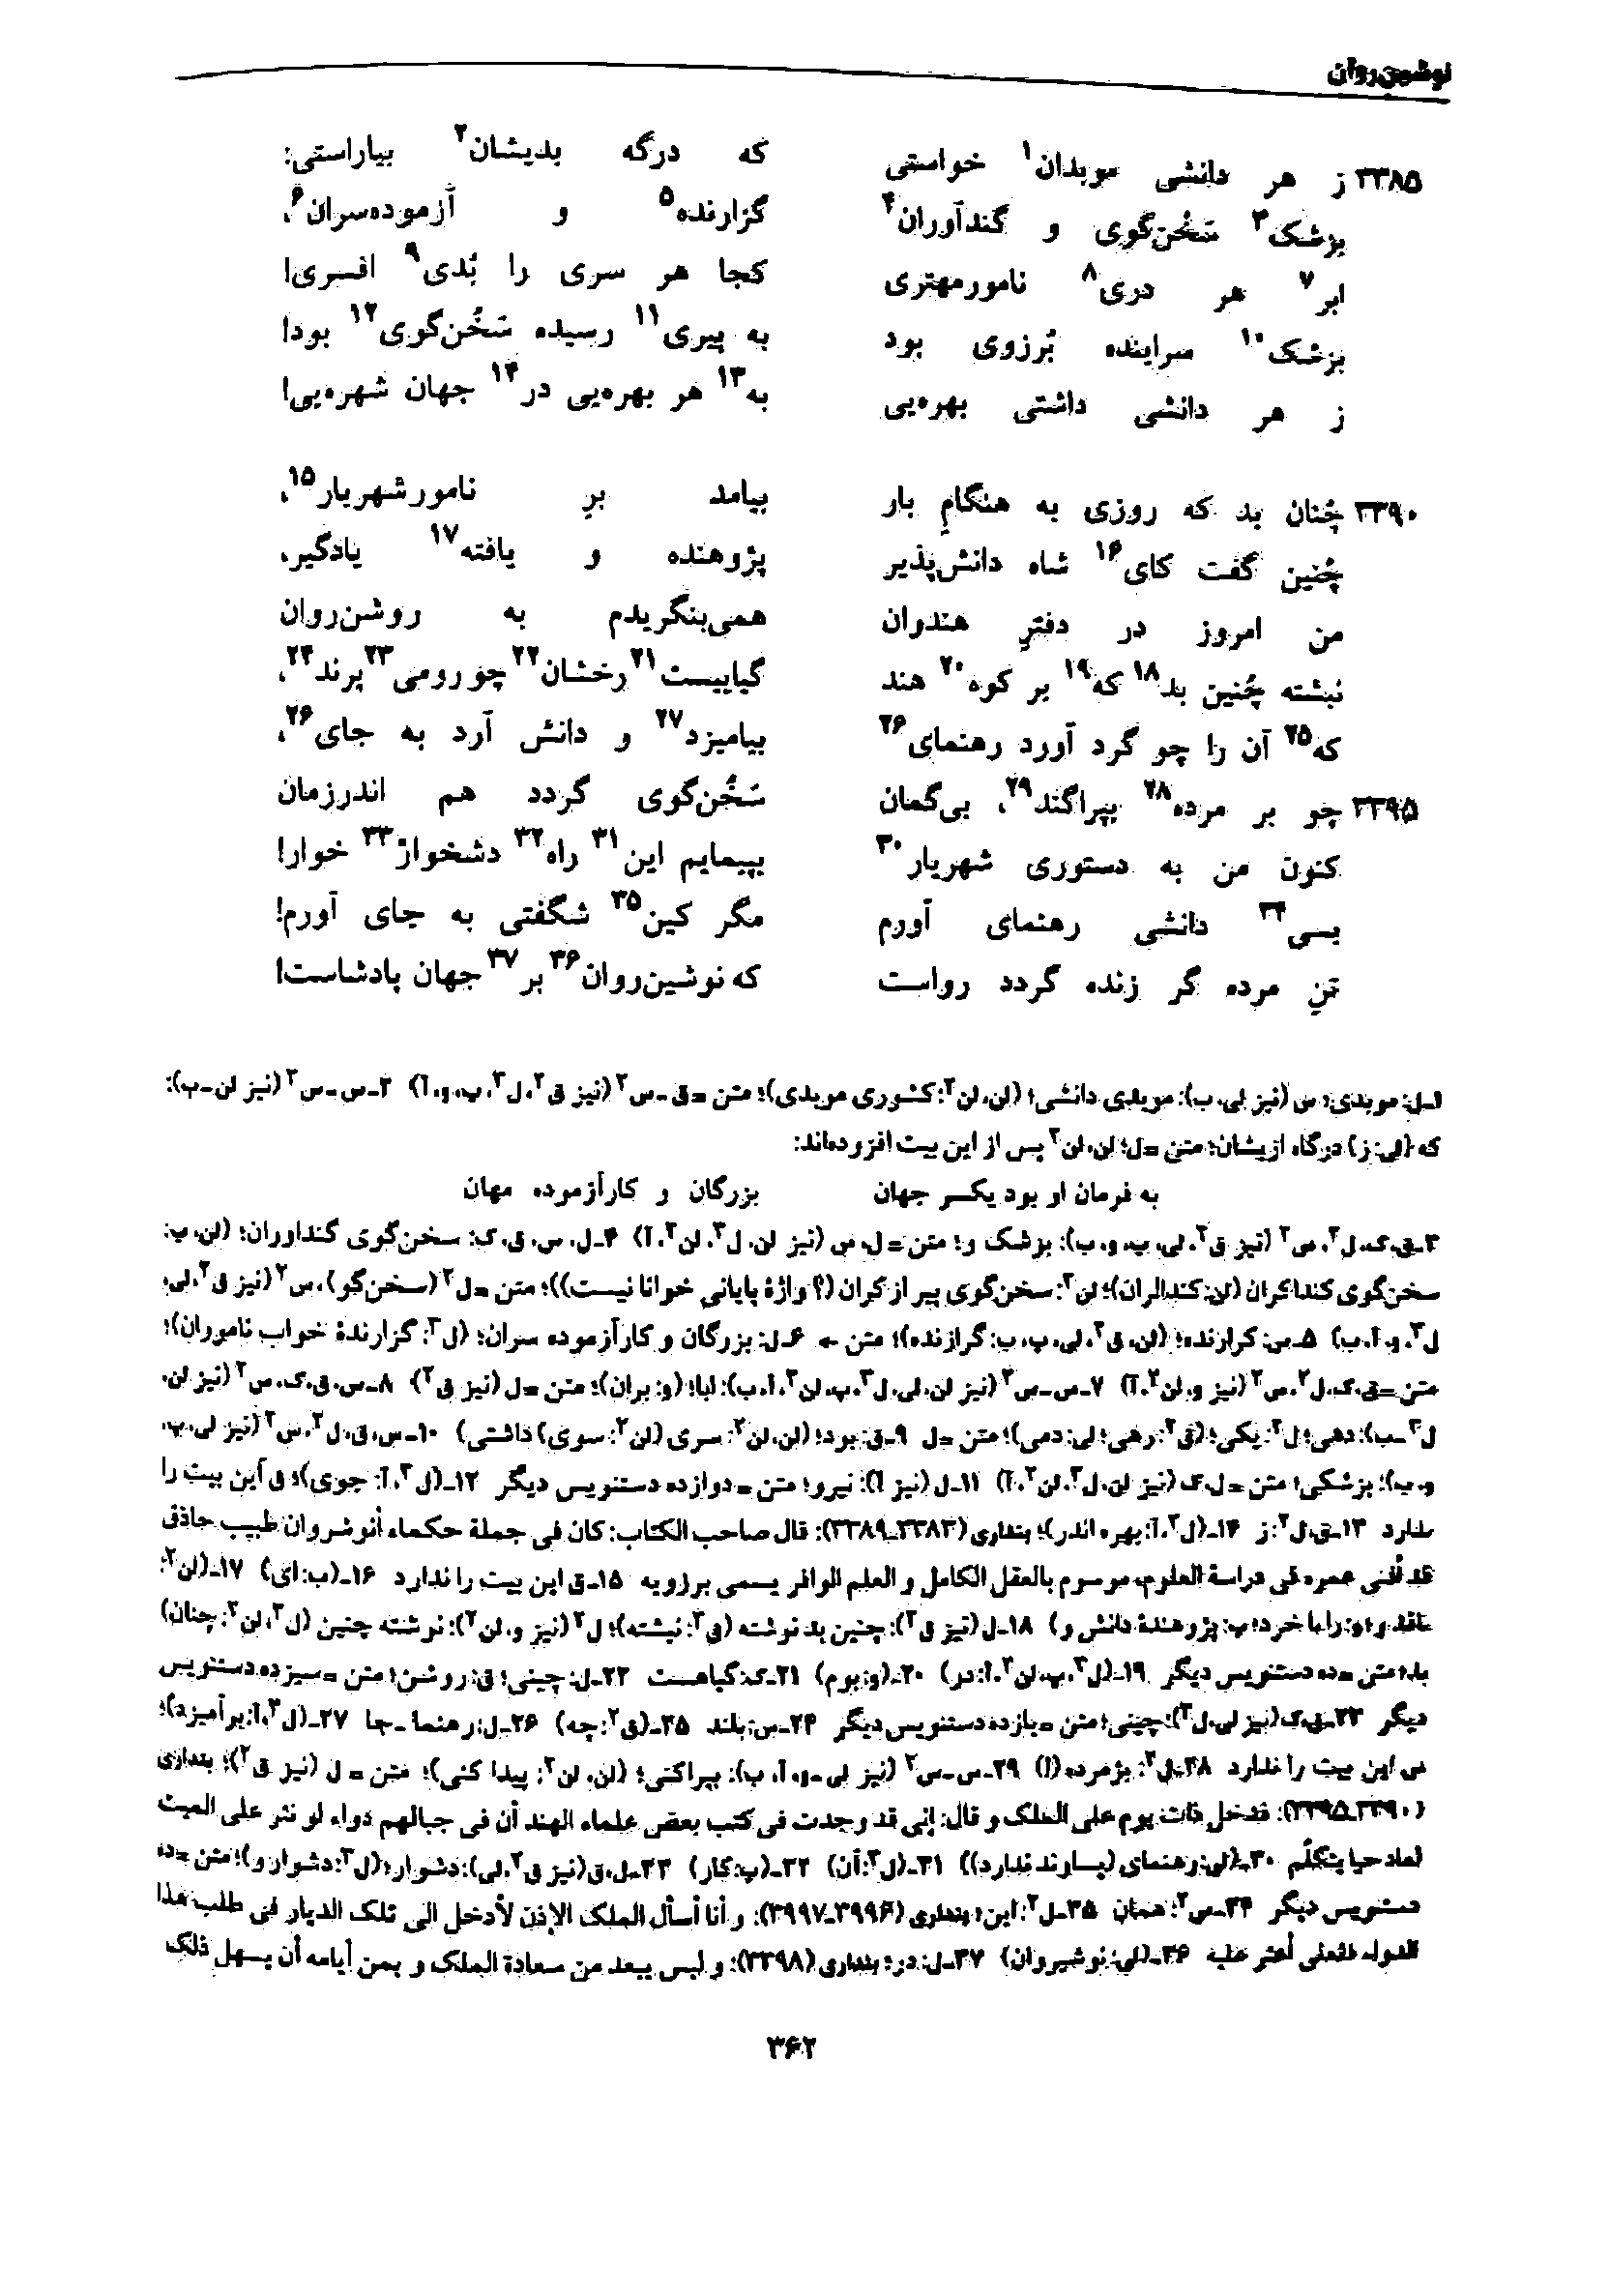 vol. 7, p. 362